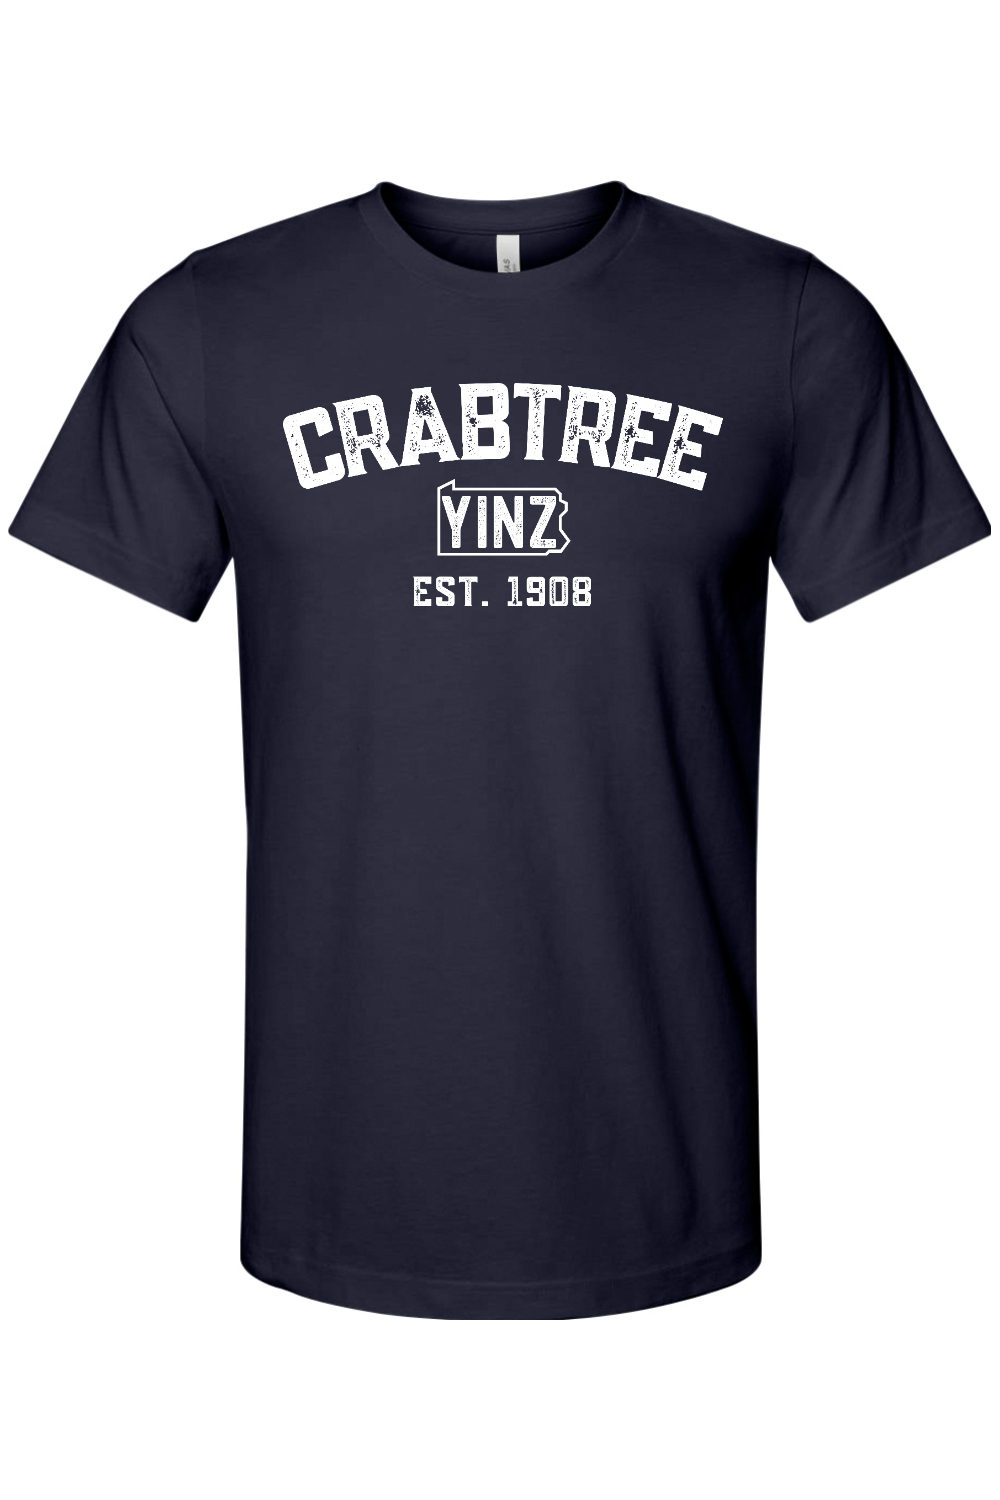 Crabtree Yinzylvania - Yinzylvania